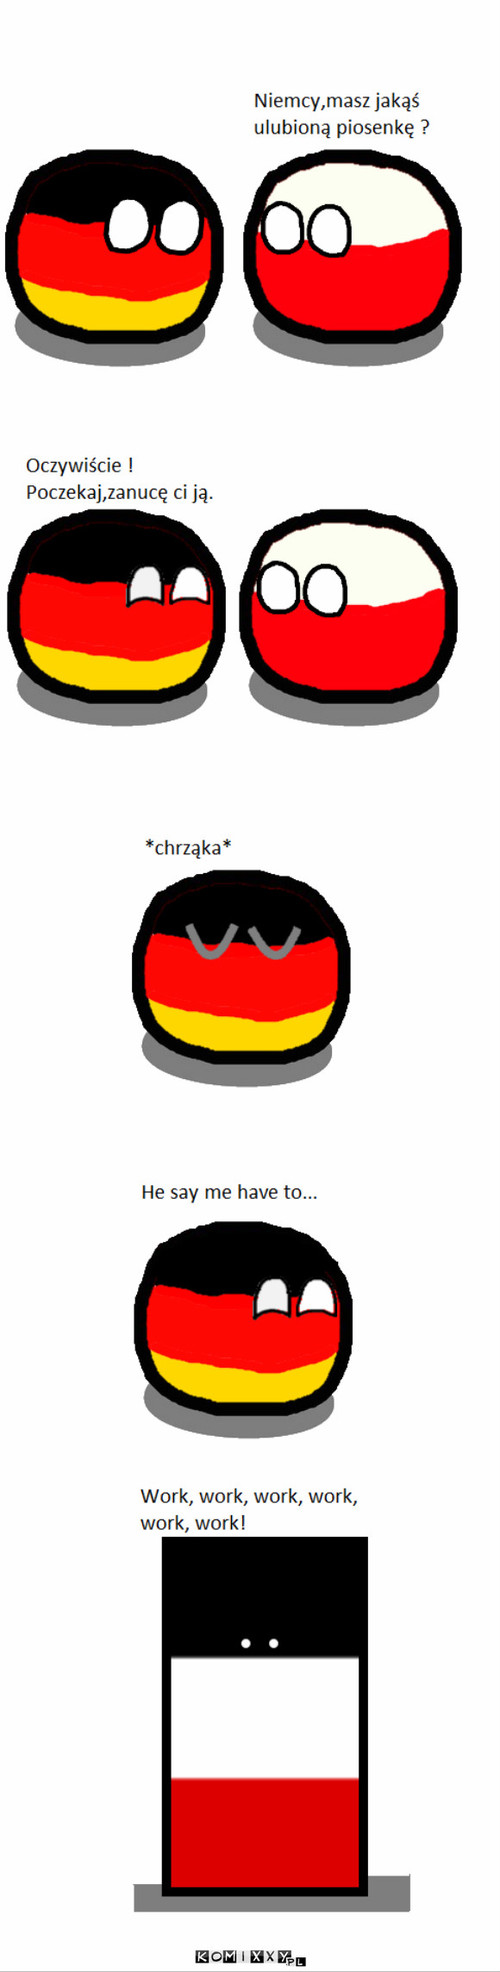 Ulubiona piosenka Niemiec –  